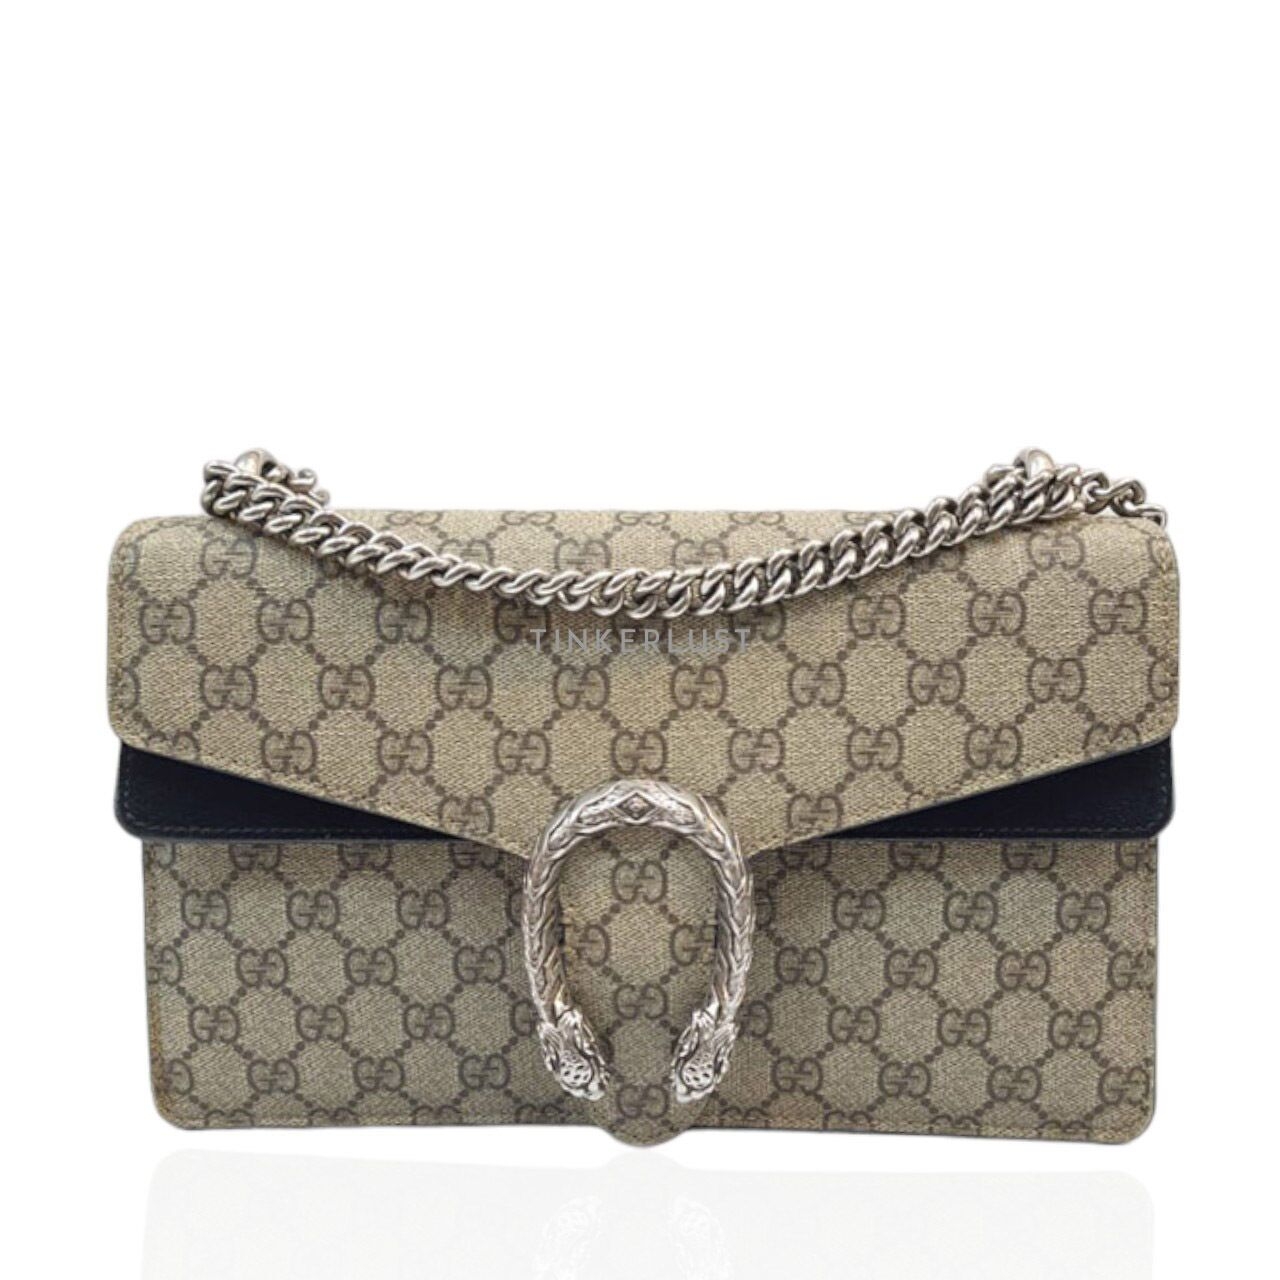 Gucci Dionysus GG Monogram Supreme SHW Shoulder Bag